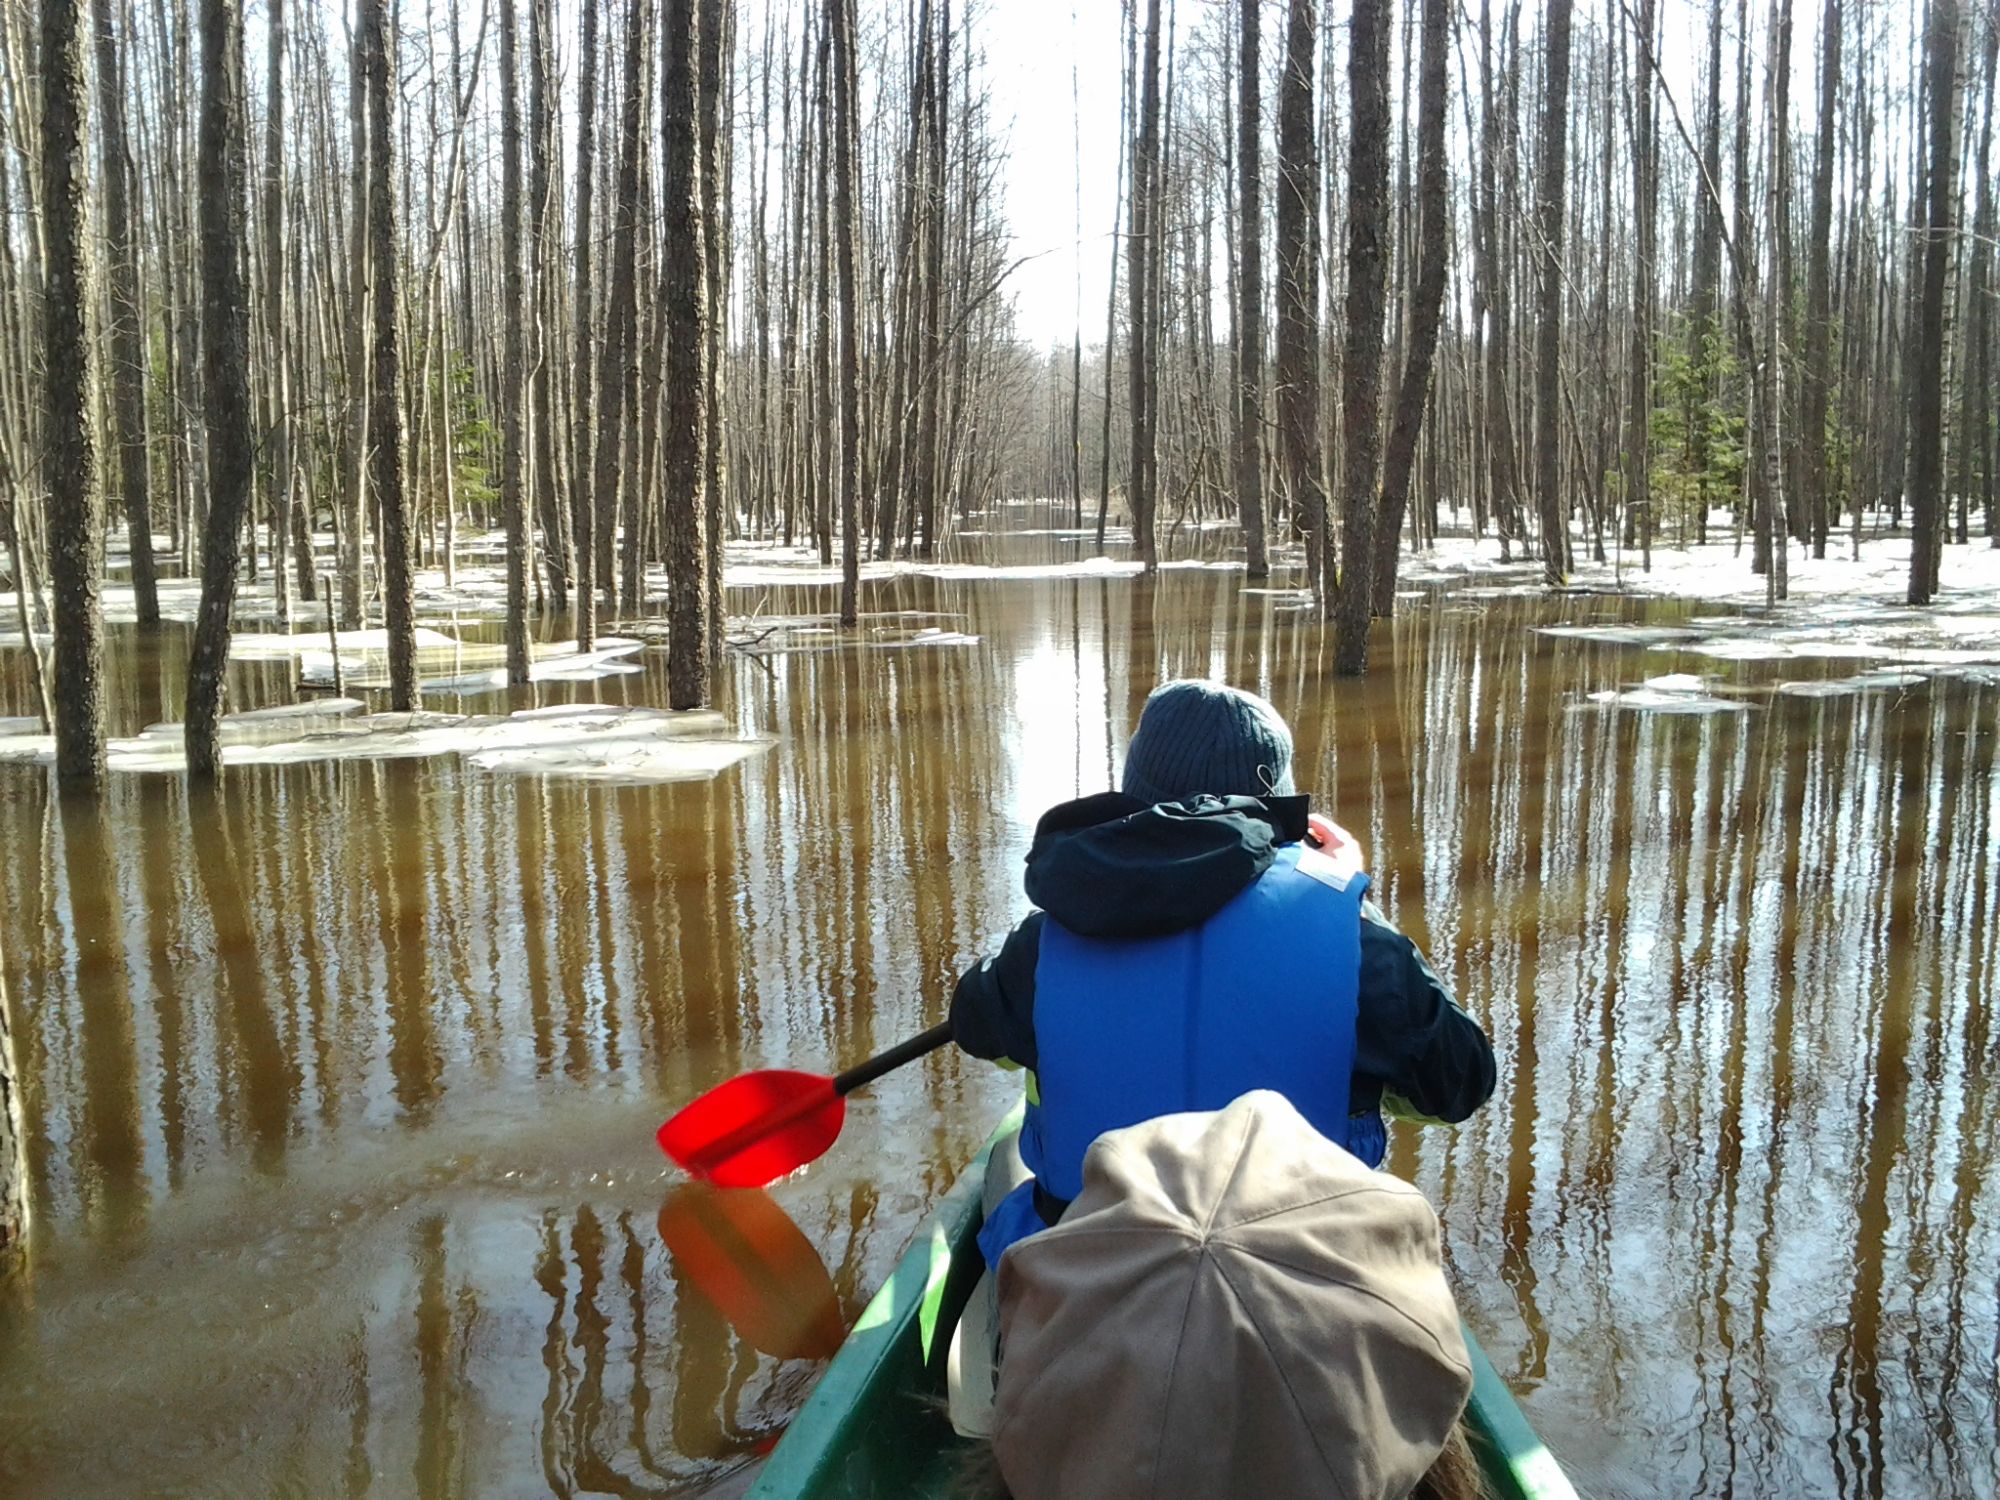 Kanuumatk Soomaa rahvuspargi üleujutusalal. Aivar Ruukel